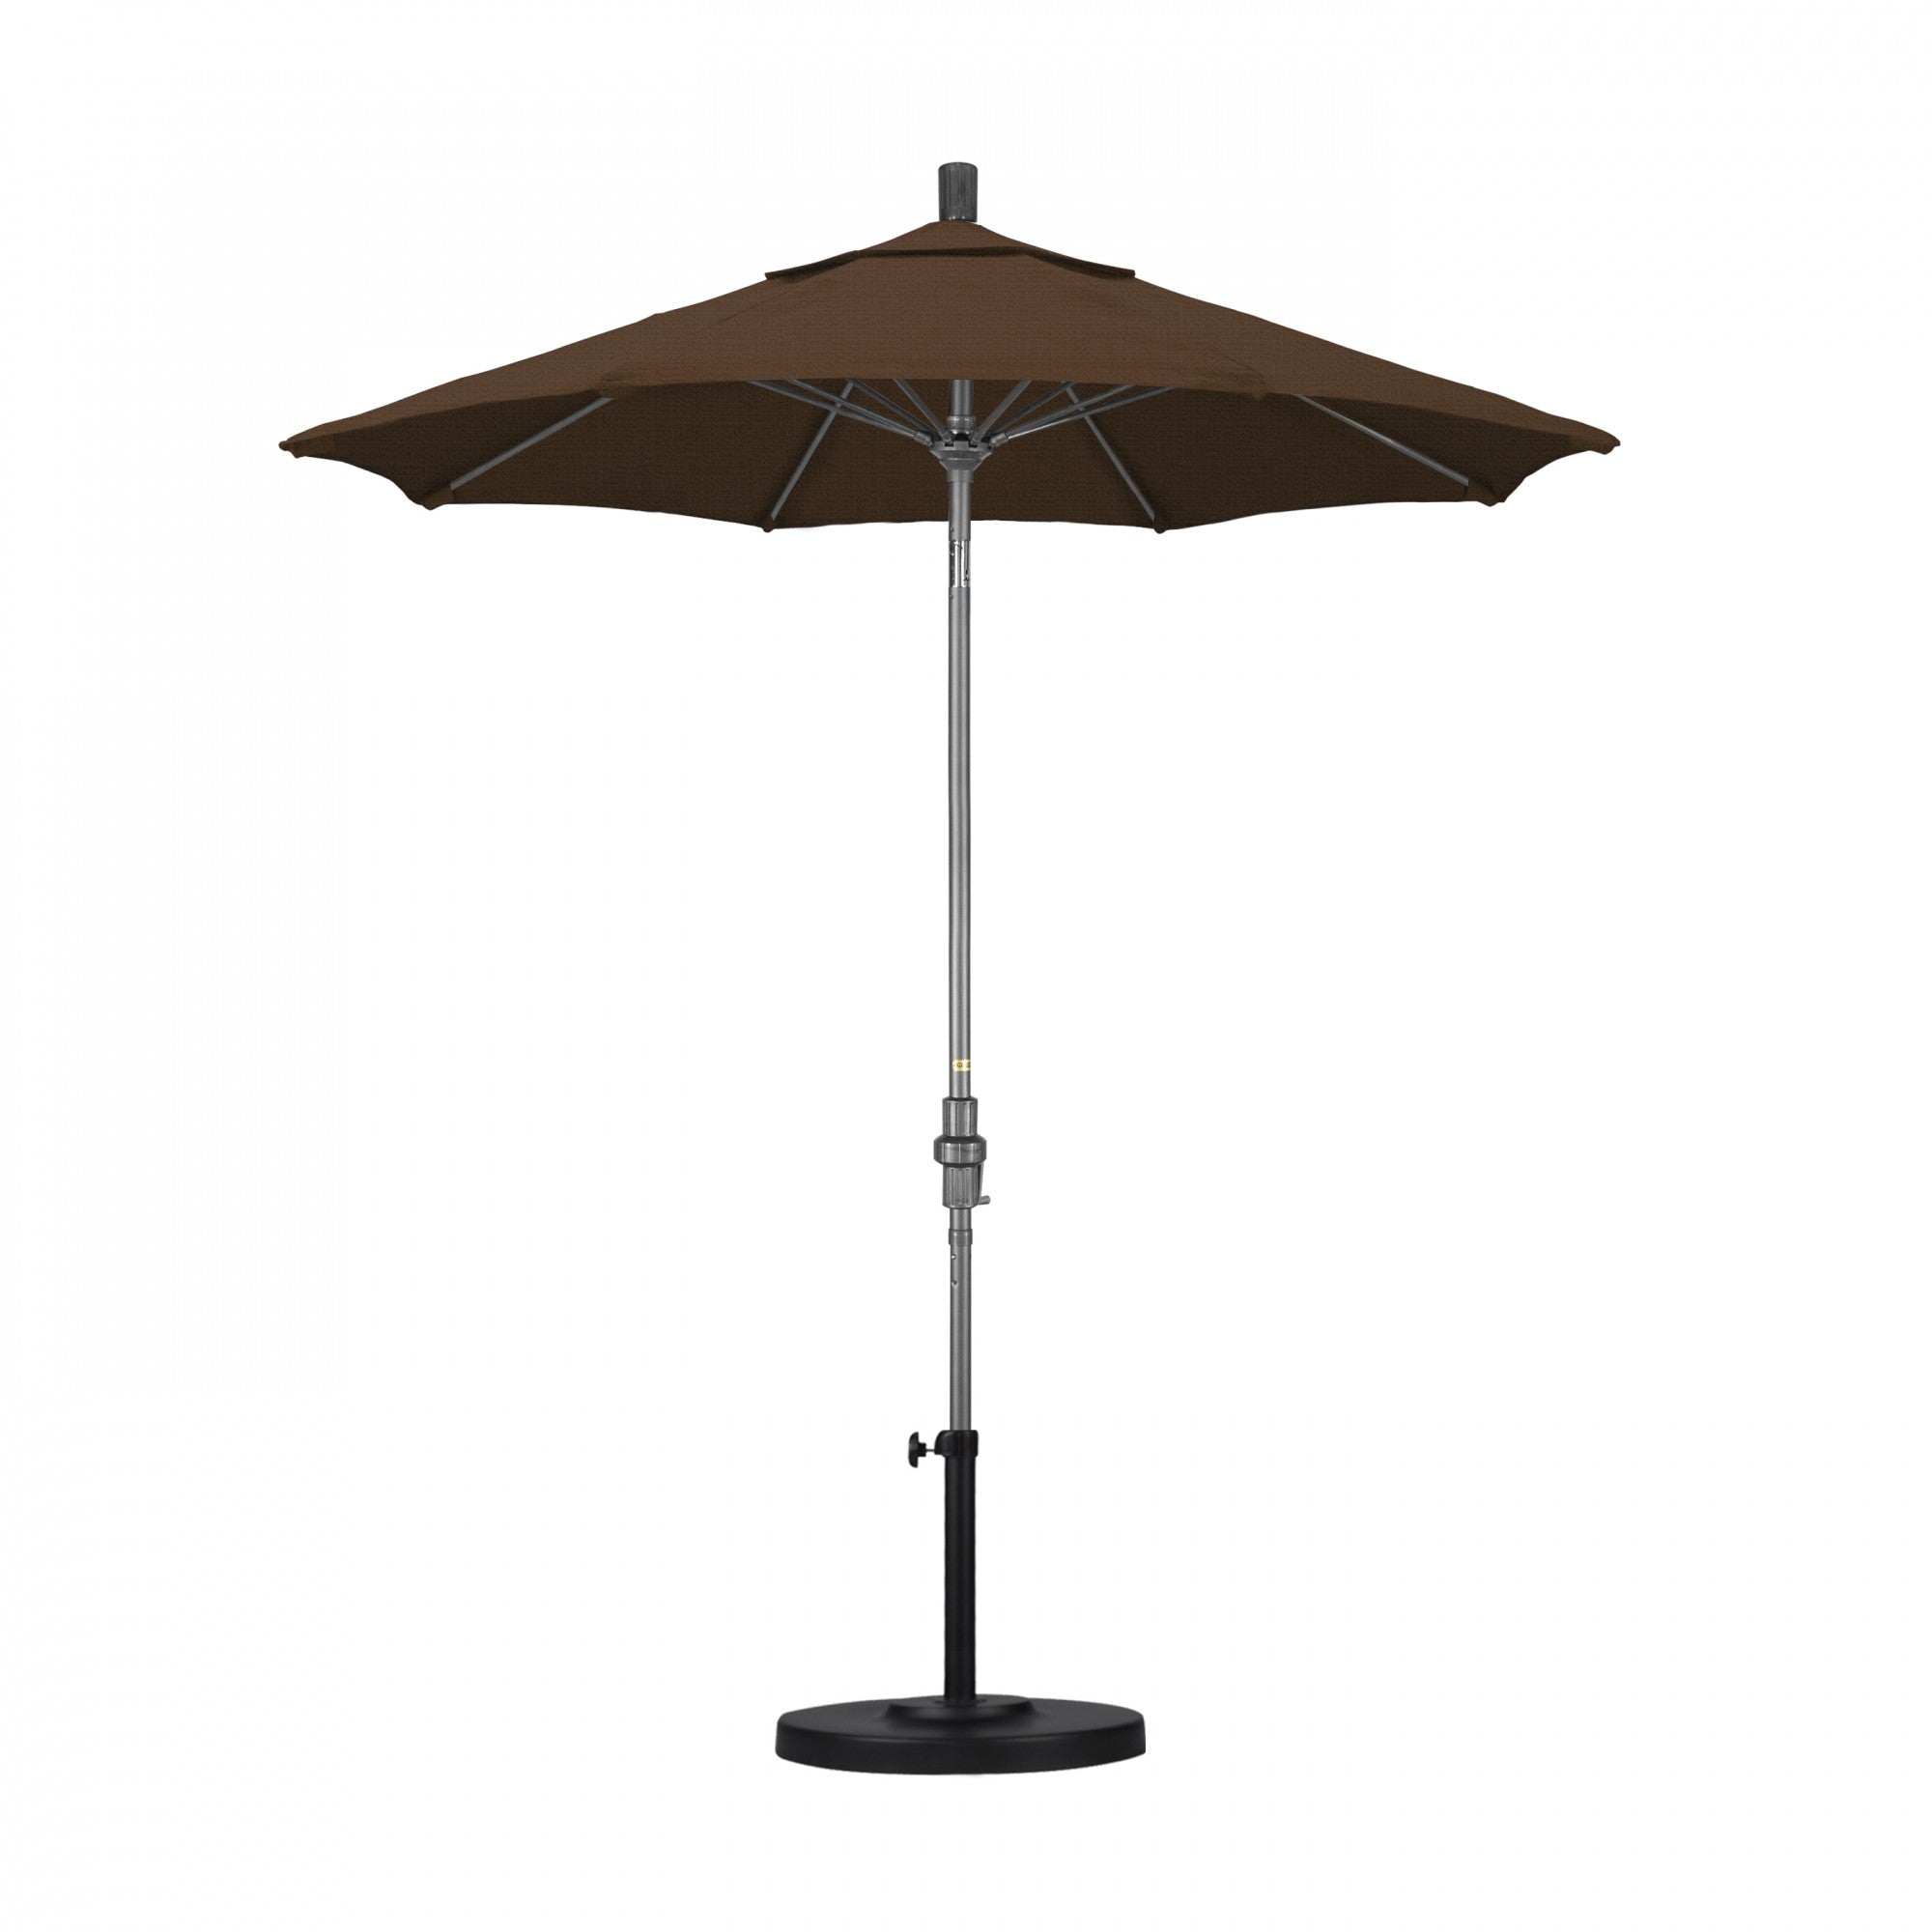 California Umbrella - 7.5' - Patio Umbrella Umbrella - Aluminum Pole - Teak - Olefin - GSCUF758010-F71